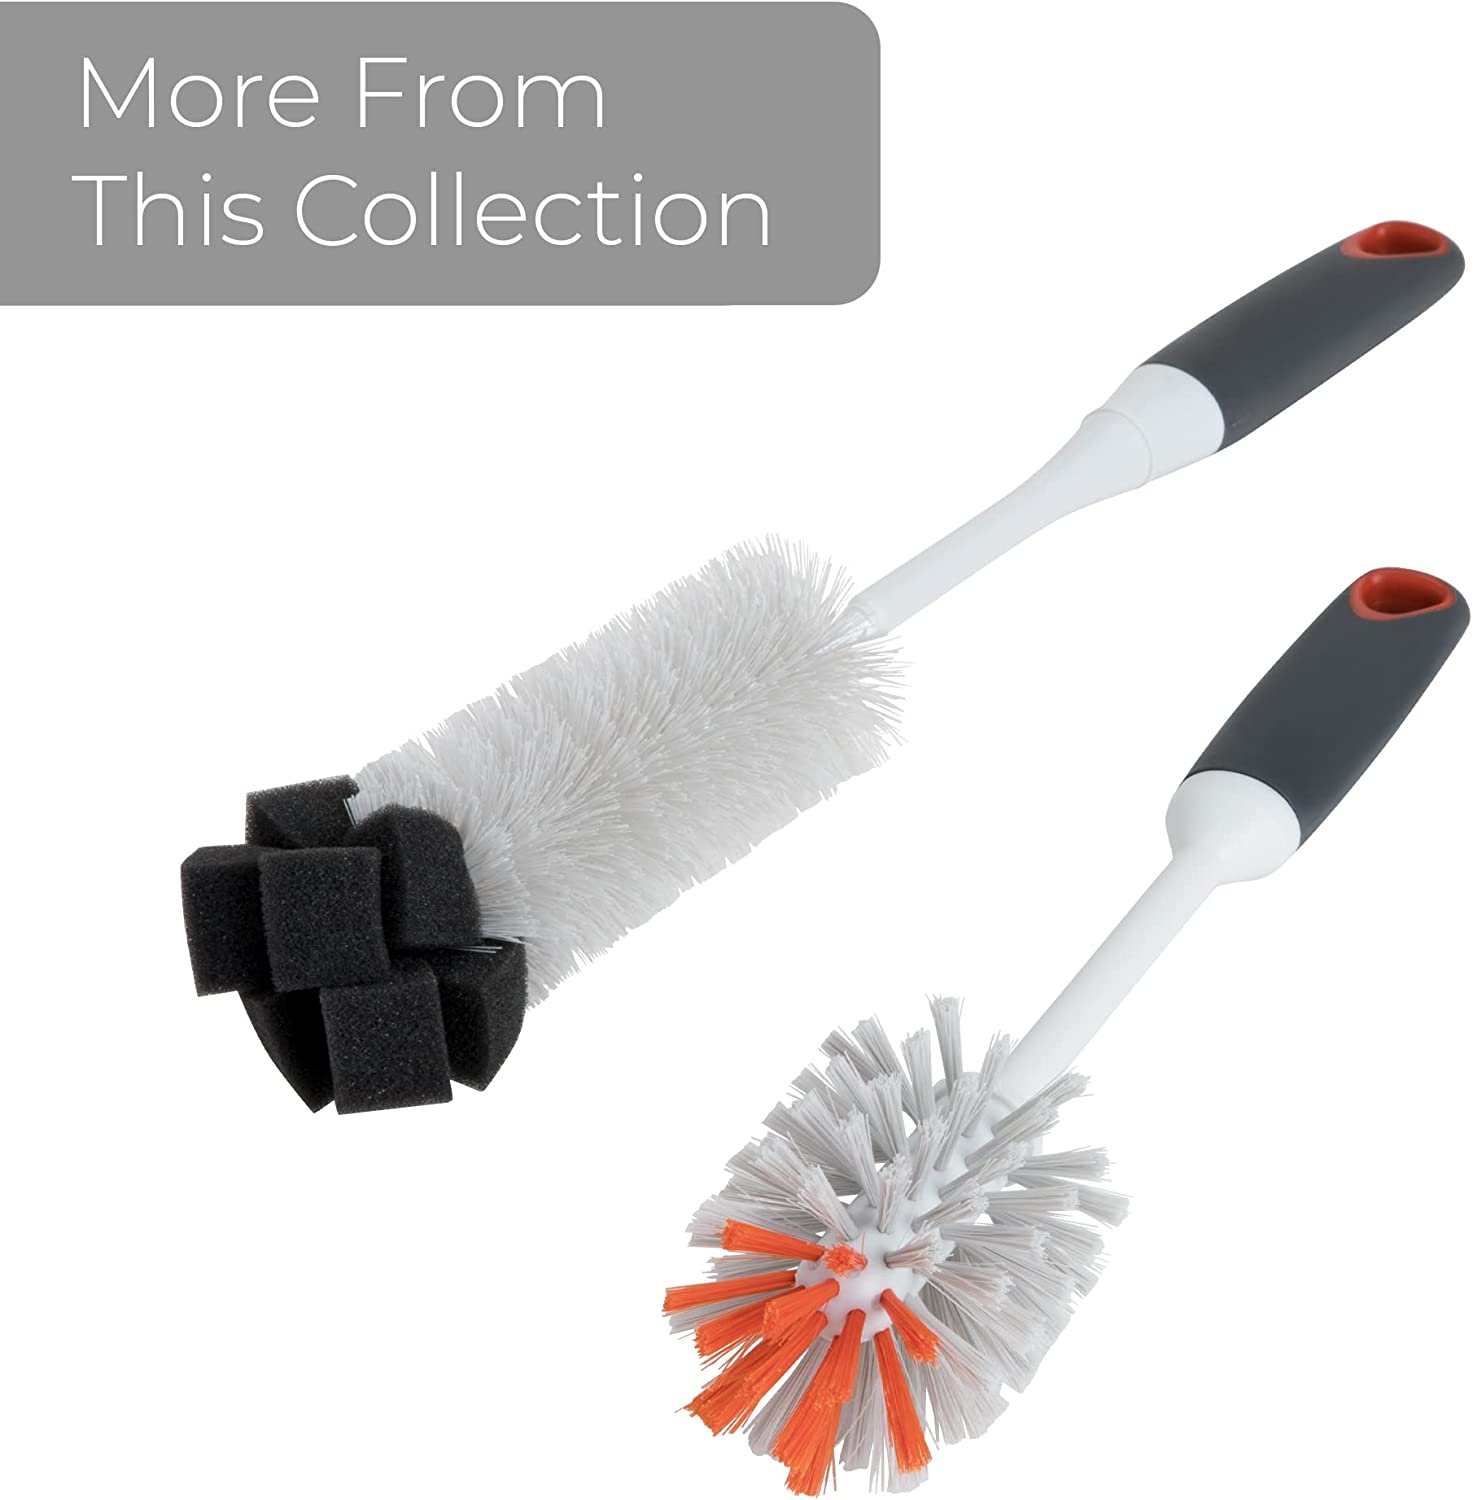 https://www.shopsmartdesign.com/cdn/shop/products/bottle-brush-with-sponge-end-14-inch-smart-design-cleaning-7001381-incrementing-number-445861.jpg?v=1679345025